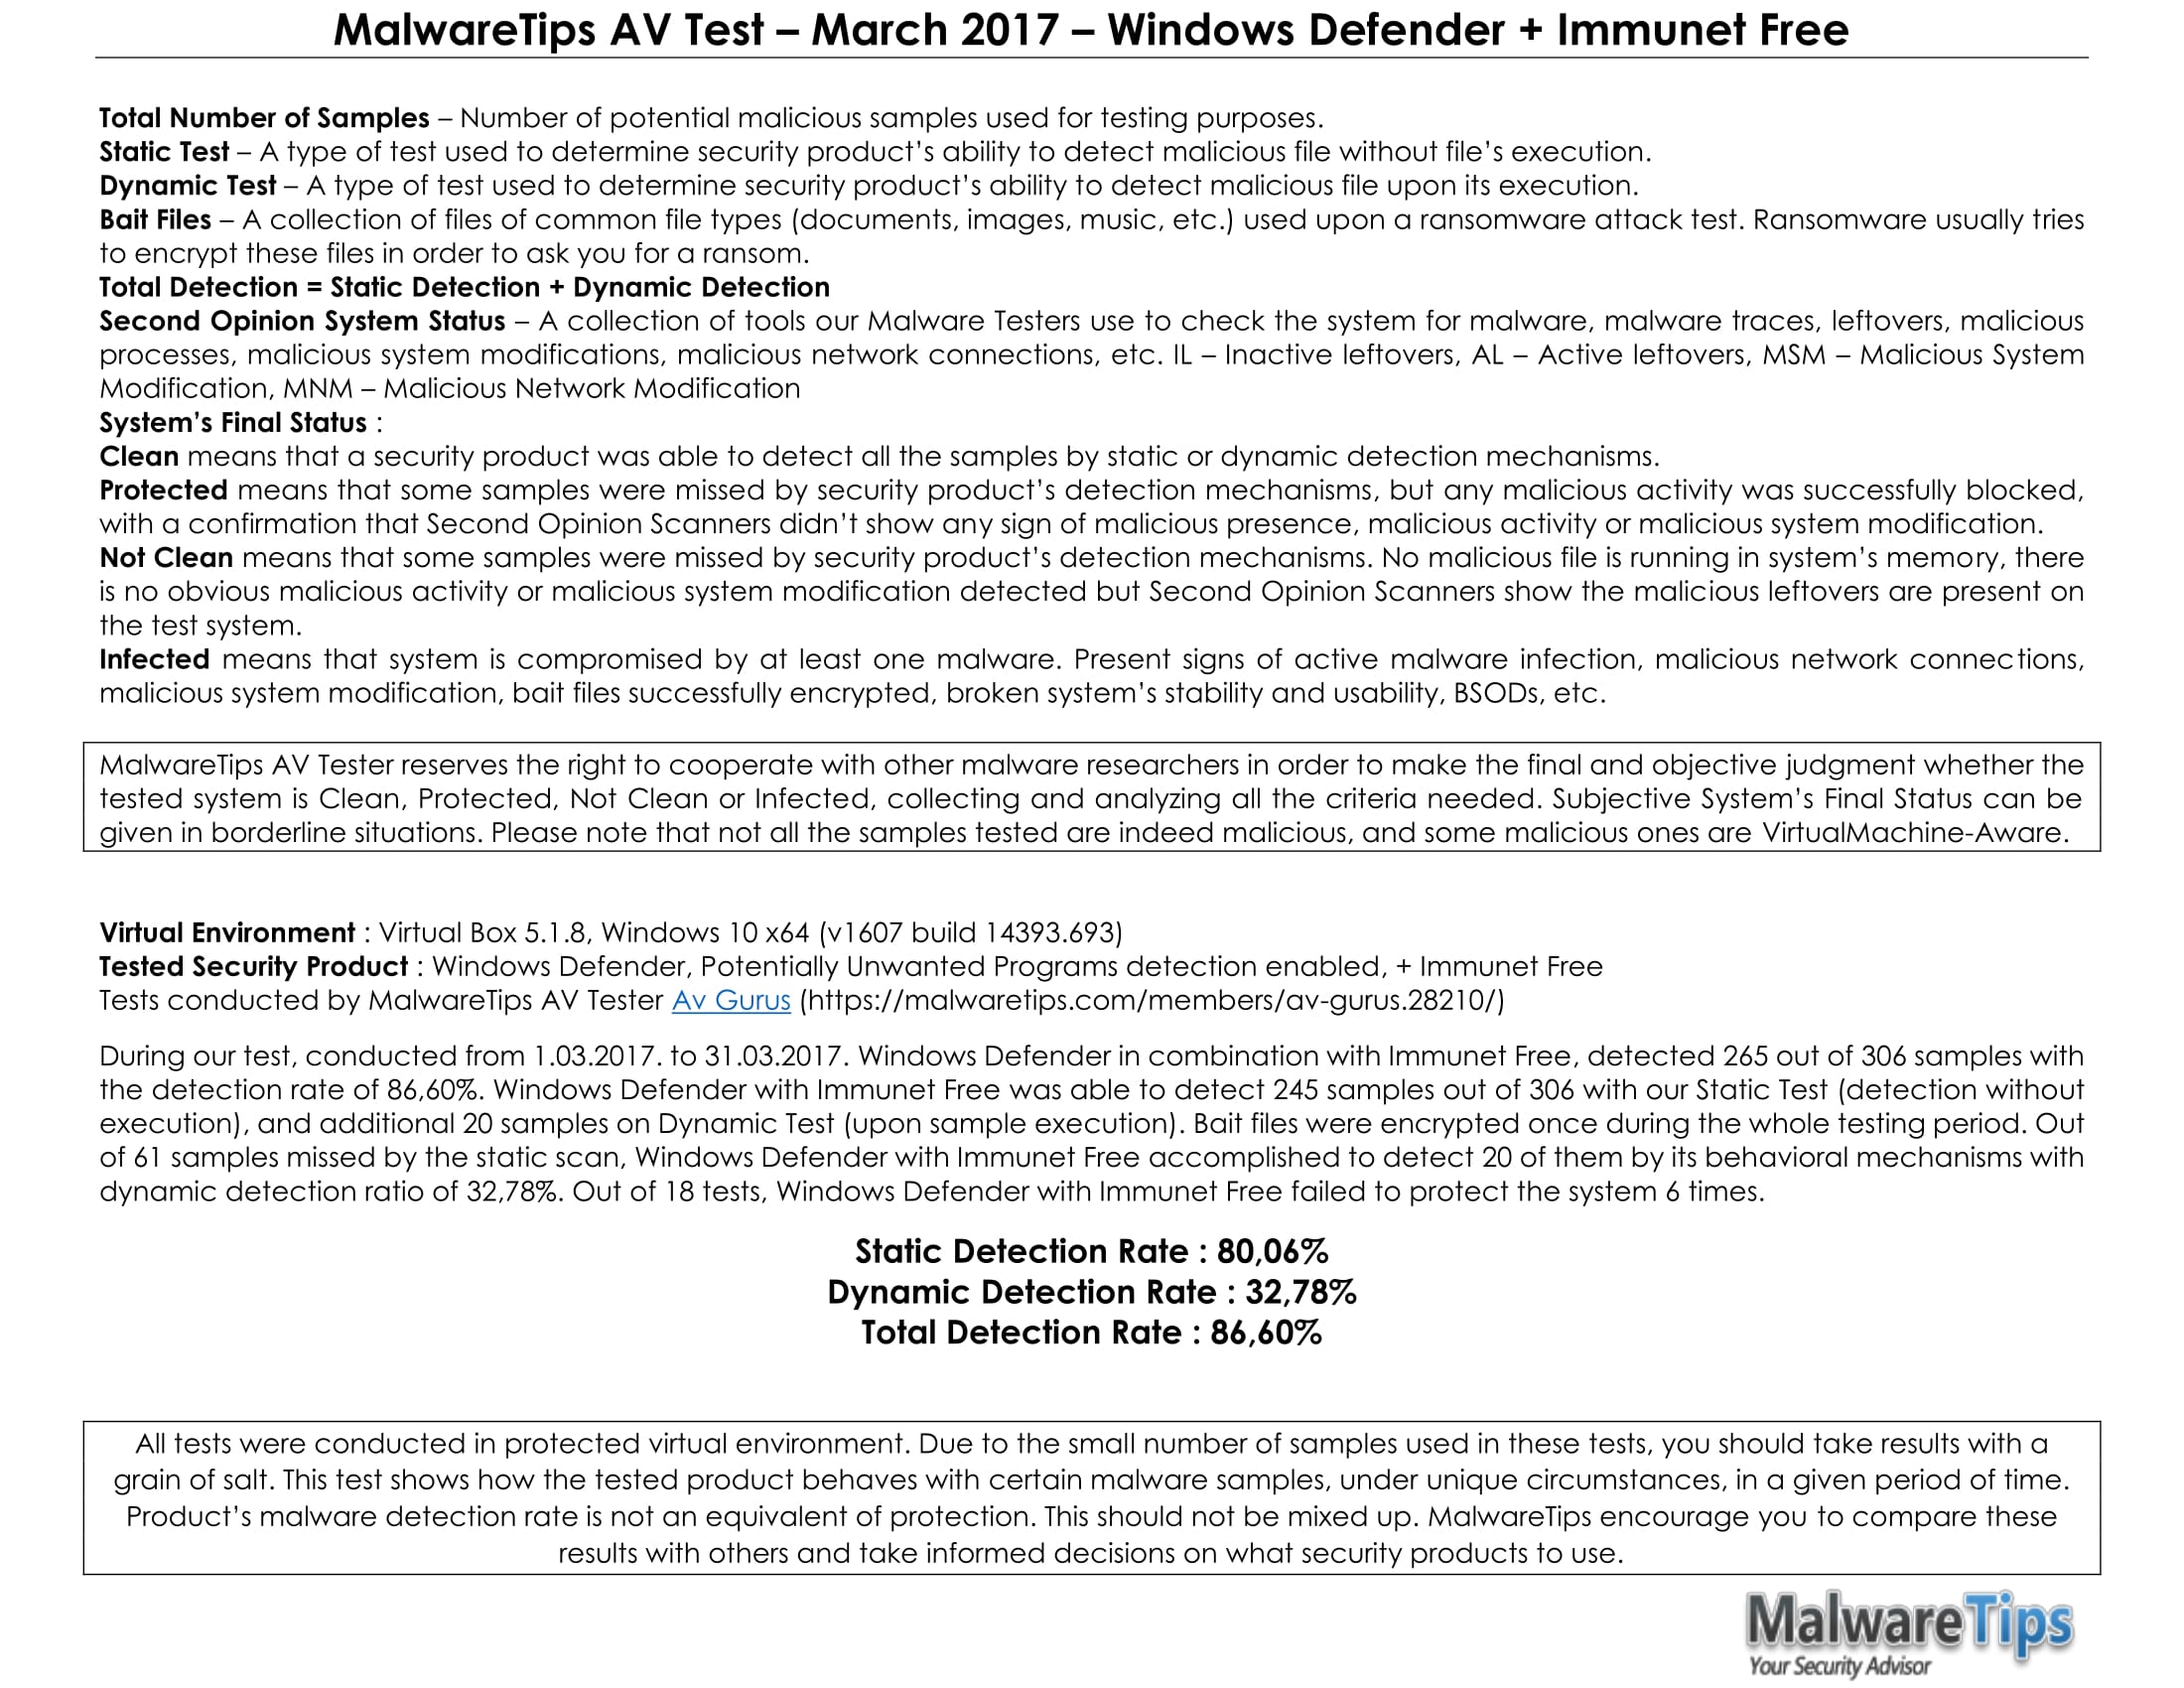 MalwareTips AV Test – March 2017 – Windows Defender + Immunet Free-2.jpg